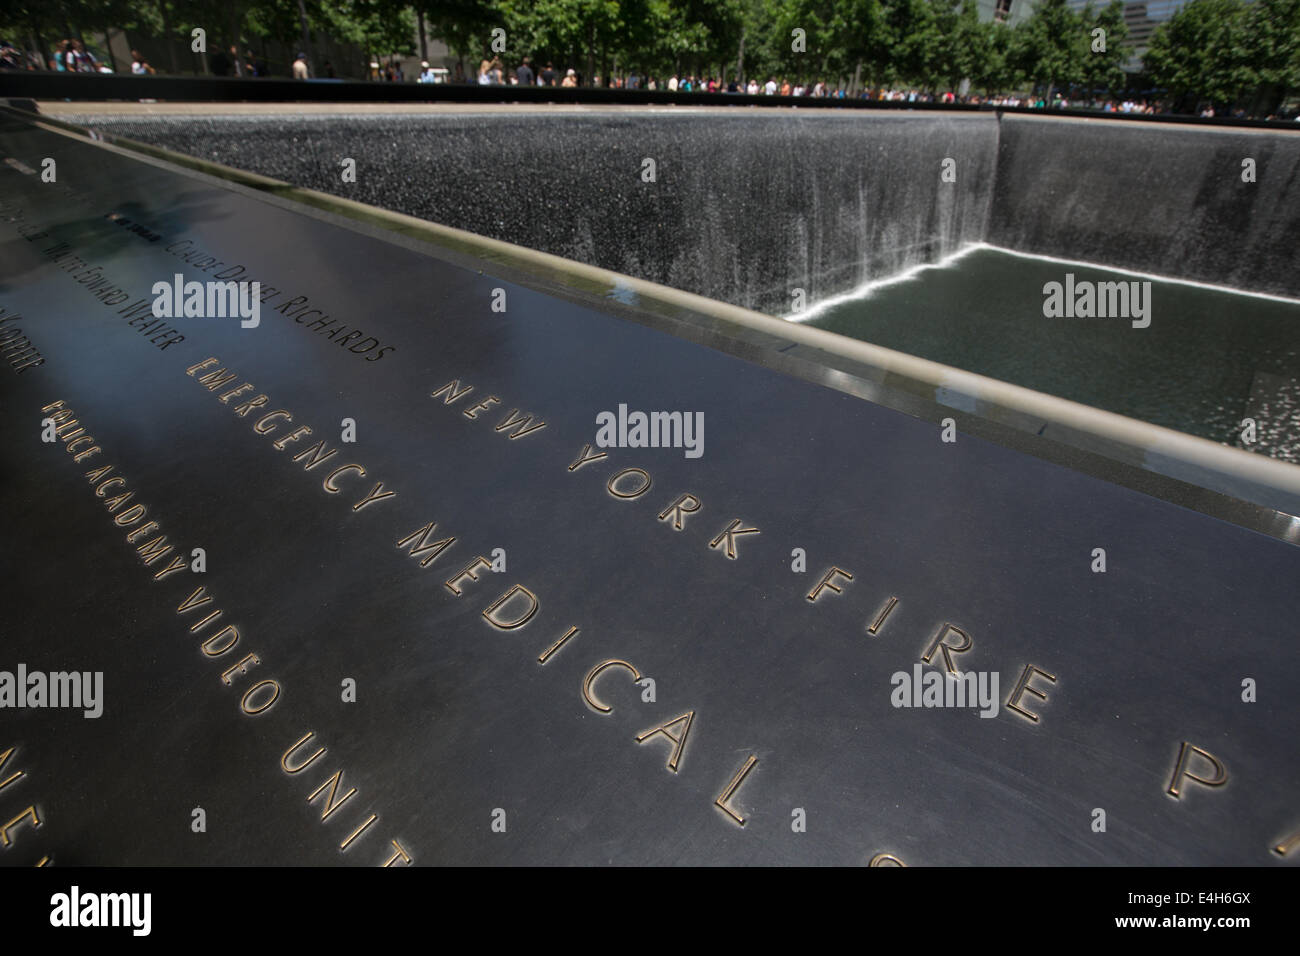 Ground Zero World Trade Center 9-11 Memorial appelé, Mémorial National du 11 septembre à Manhattan, New York, Amérique. Banque D'Images